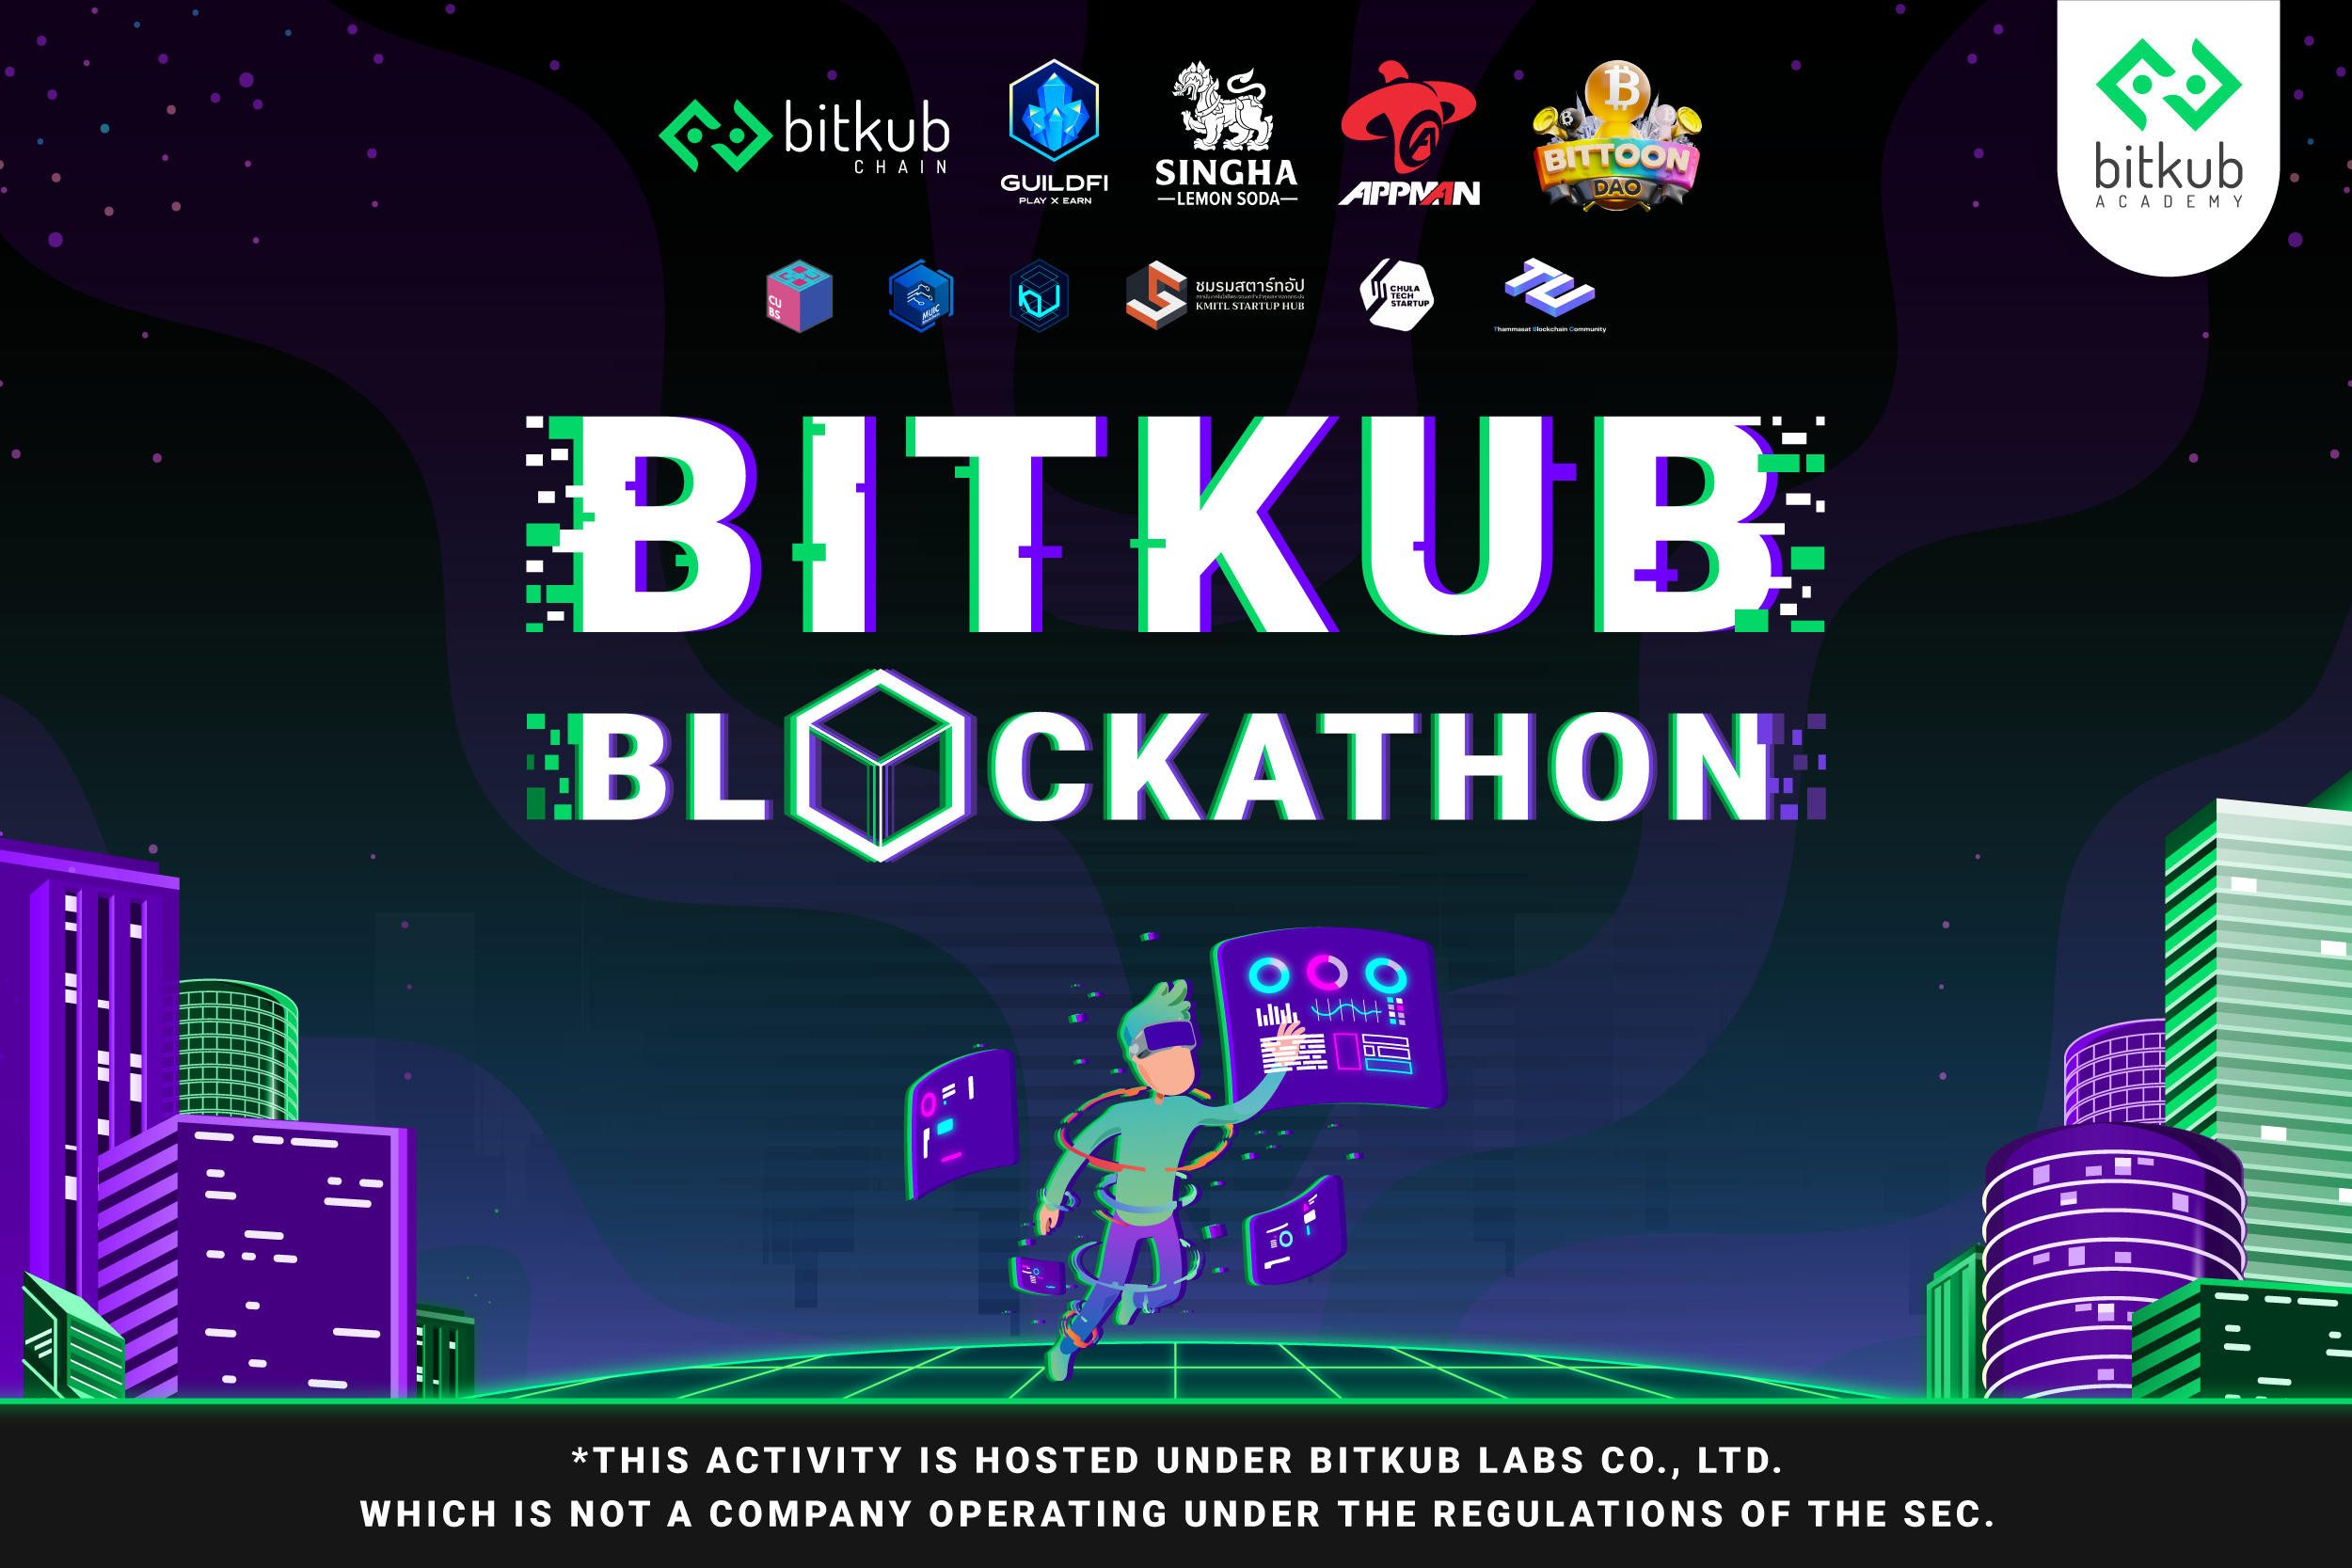 สิ้นสุดการรอคอย กับงาน "Bitkub Academy Blockathon Boot Camp" ค่ายอบรมสุดร้อนแรงแห่งปี! จาก Bitkub Academy